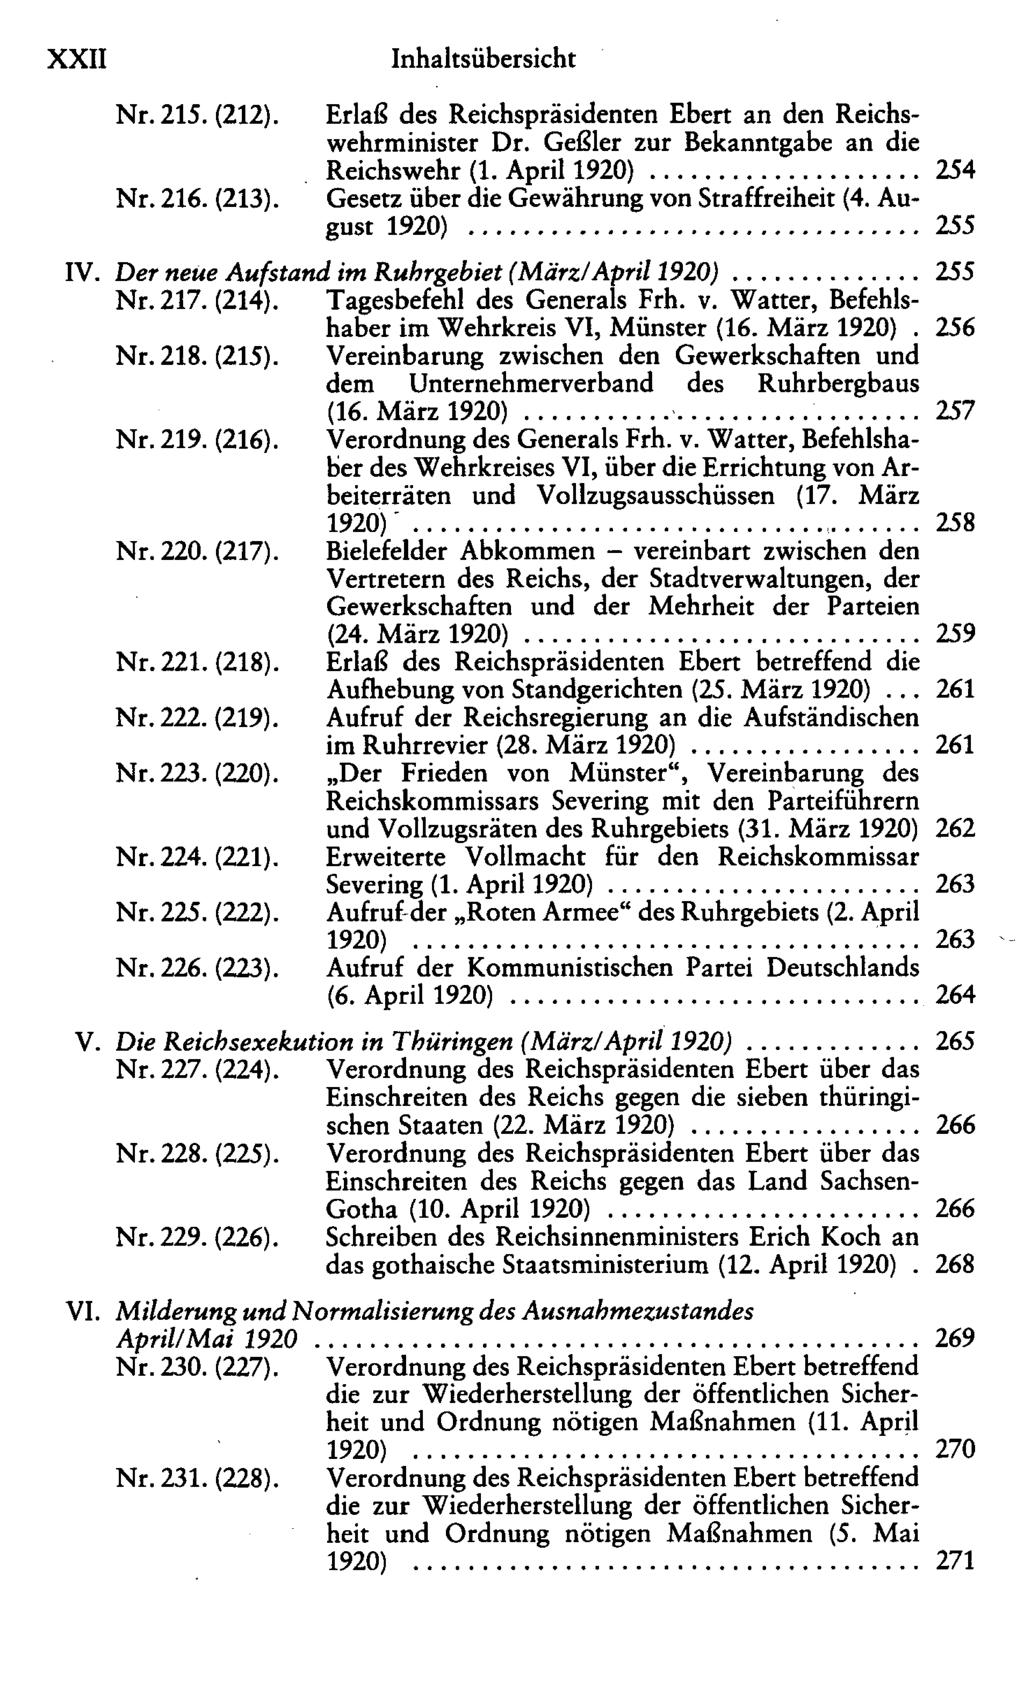 XXII Nr. 215. (212). Nr. 216. (213). Erlaß des Reichspräsidenten Ebert an den Reichswehrminister Dr. Geßler zur Bekanntgabe an die Reichswehr (1.